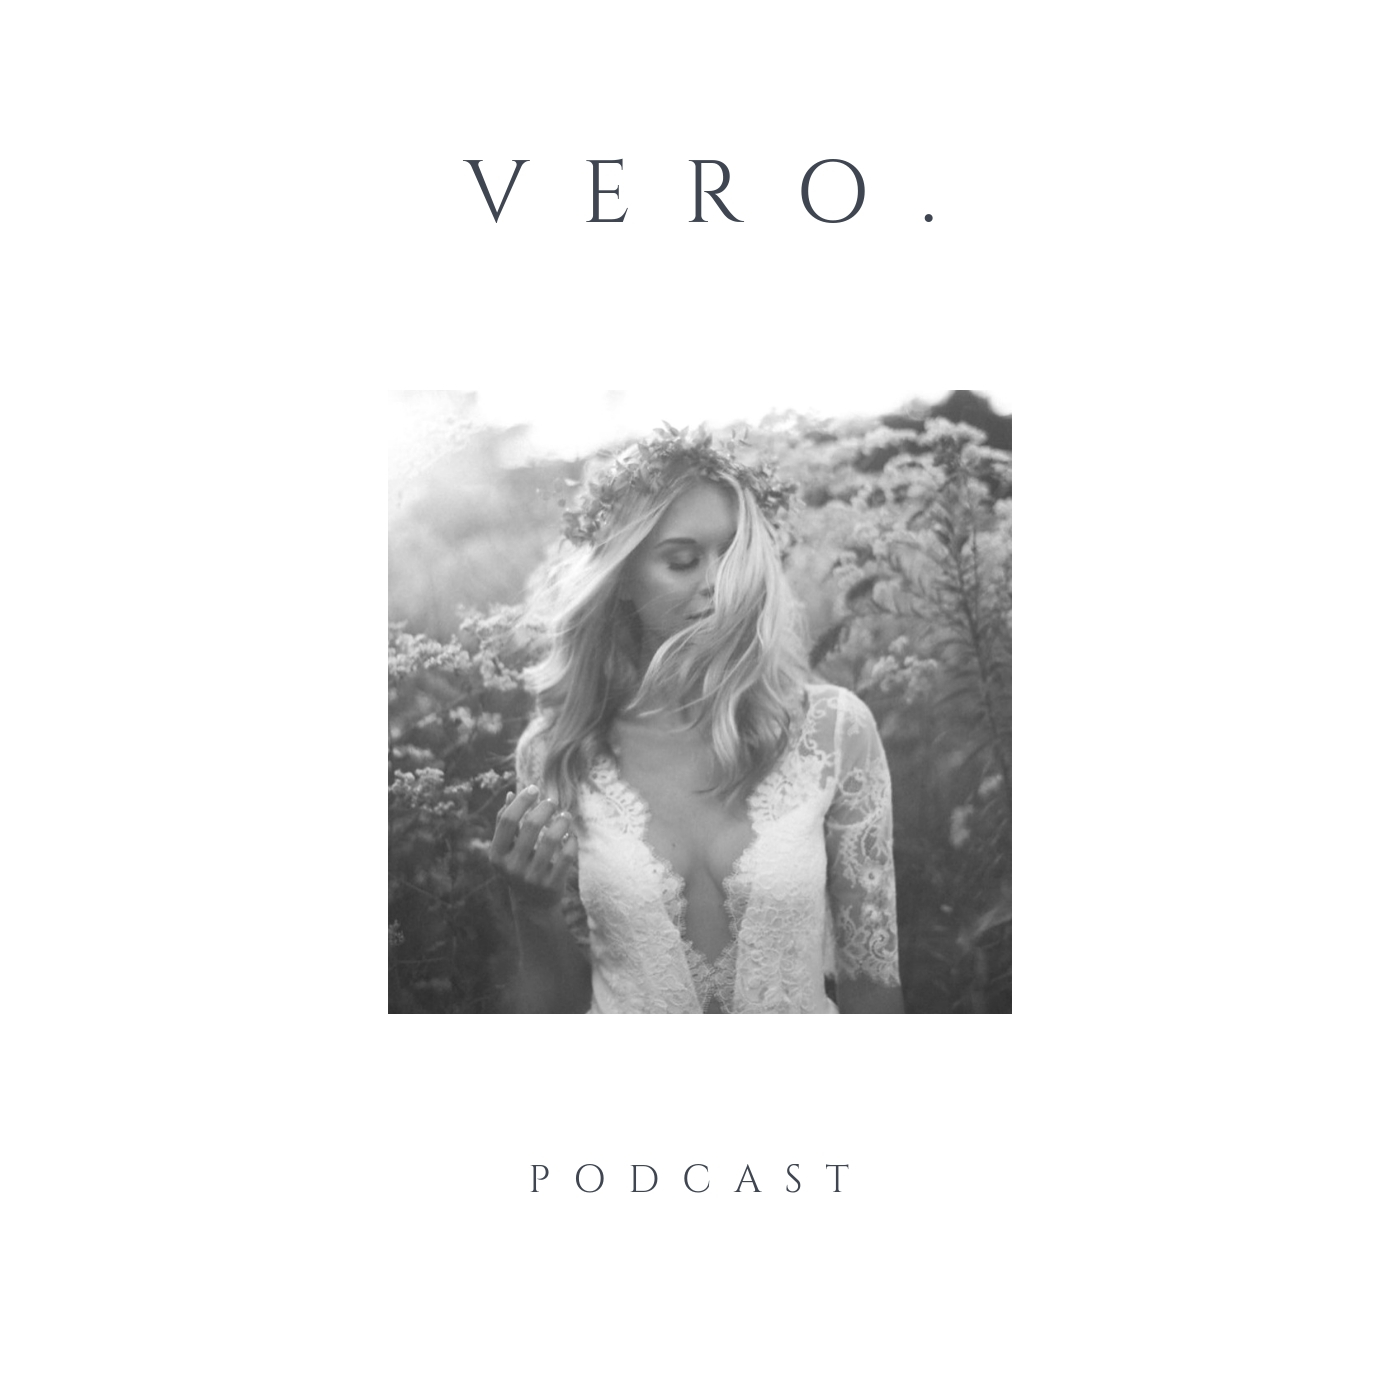 The Vero Podcast